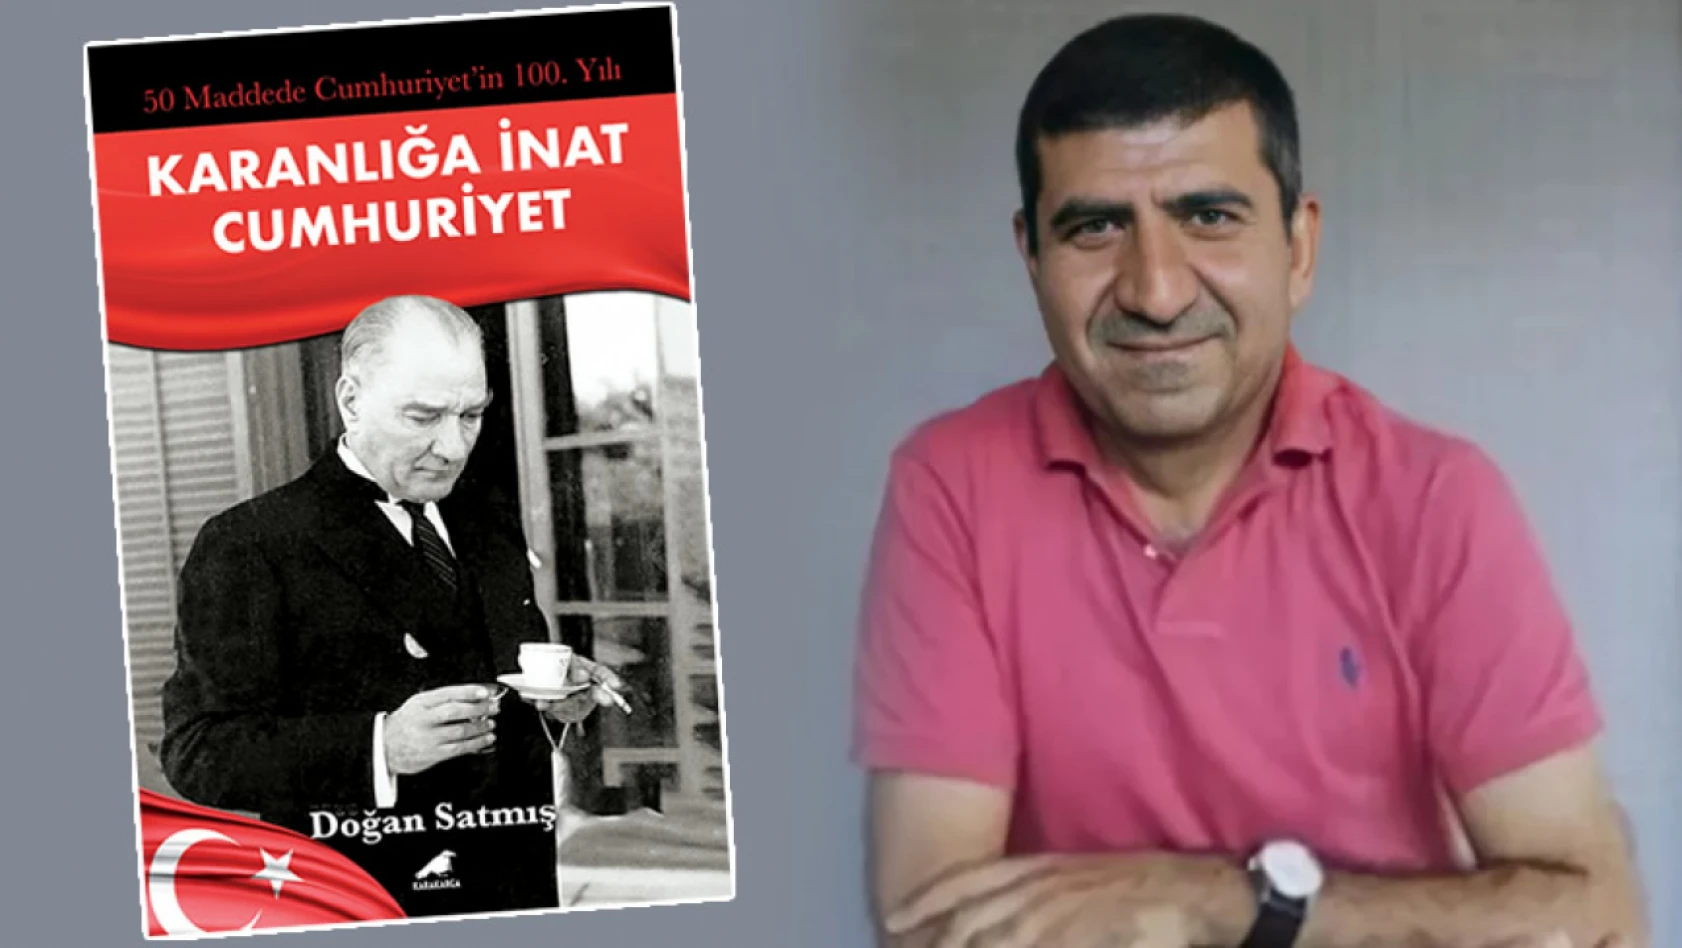 Gazeteci Doğan Satmış'ın yeni kitabı '50 Maddede Cumhuriyet'in 100. Yılı' çıktı